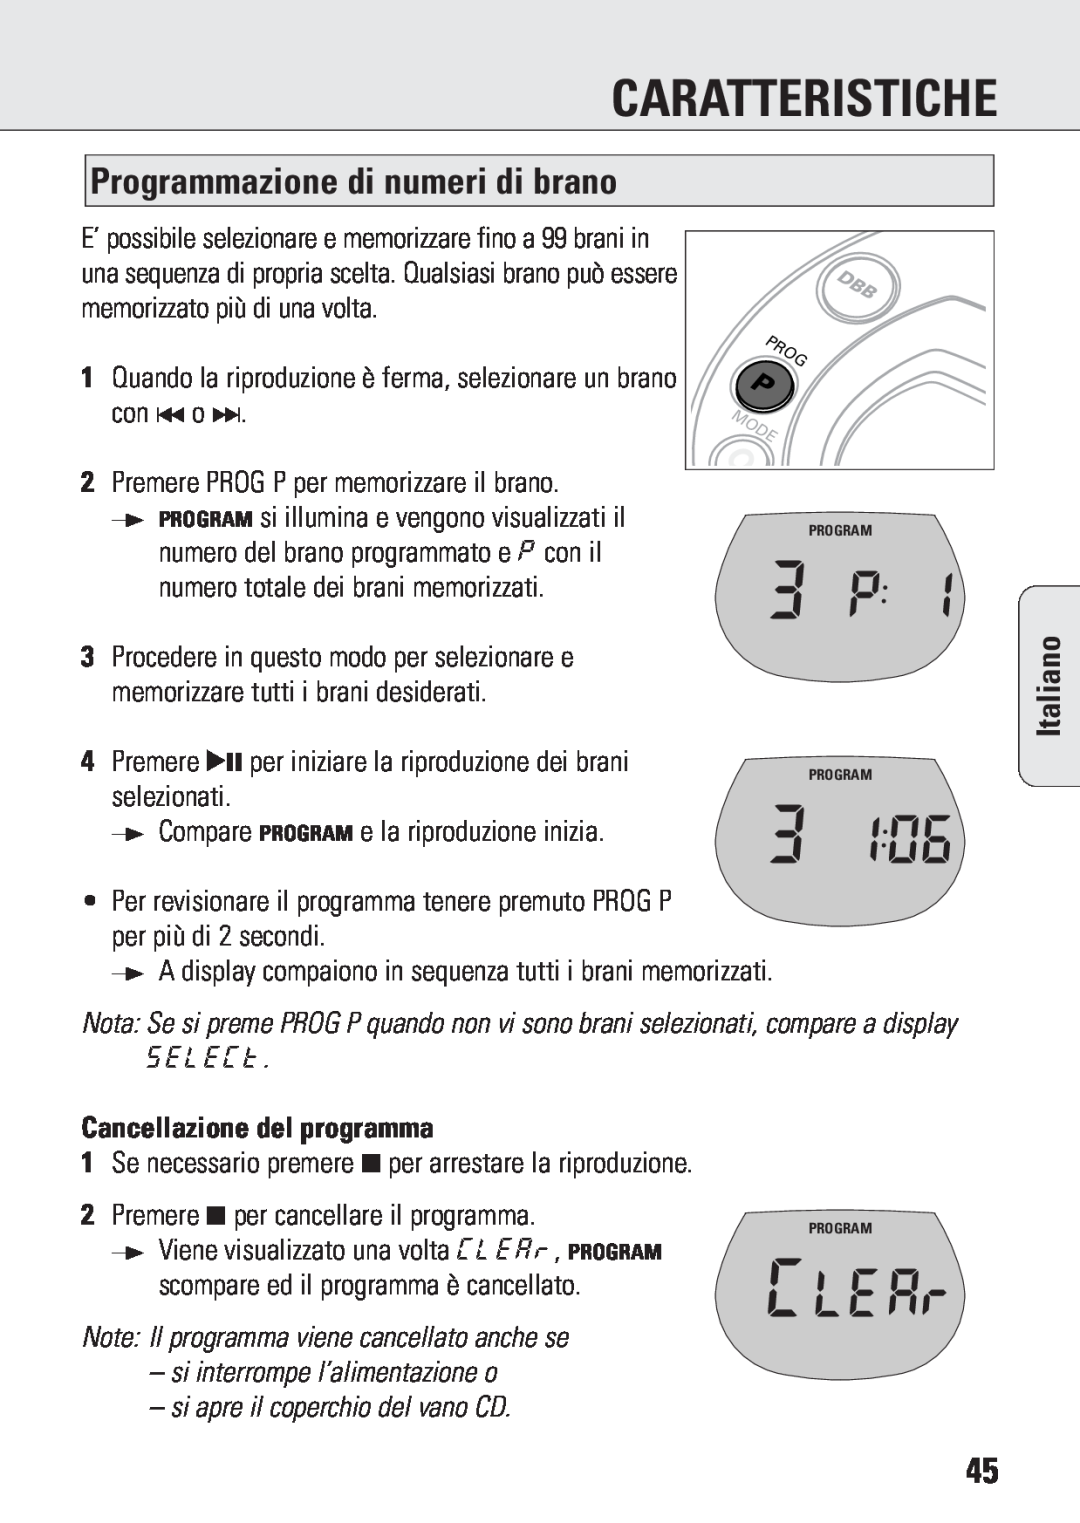 Philips ACT 7583 manual Caratteristiche, Programmazione di numeri di brano, Cancellazione del programma, Italiano 